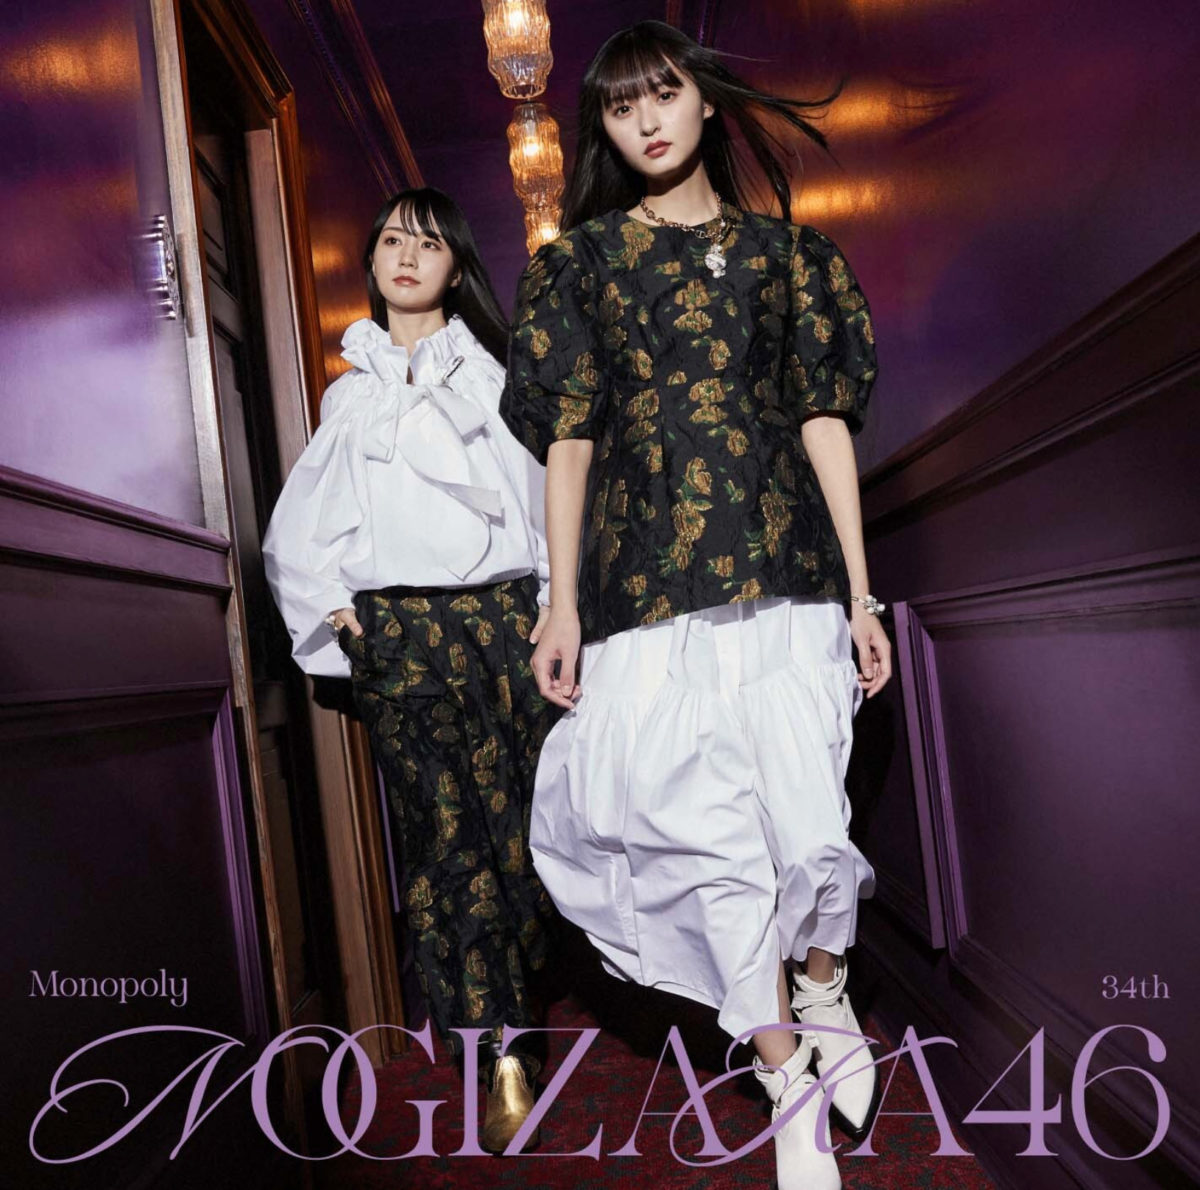 乃木坂46 第34張單曲公開收錄內容與收錄曲成員